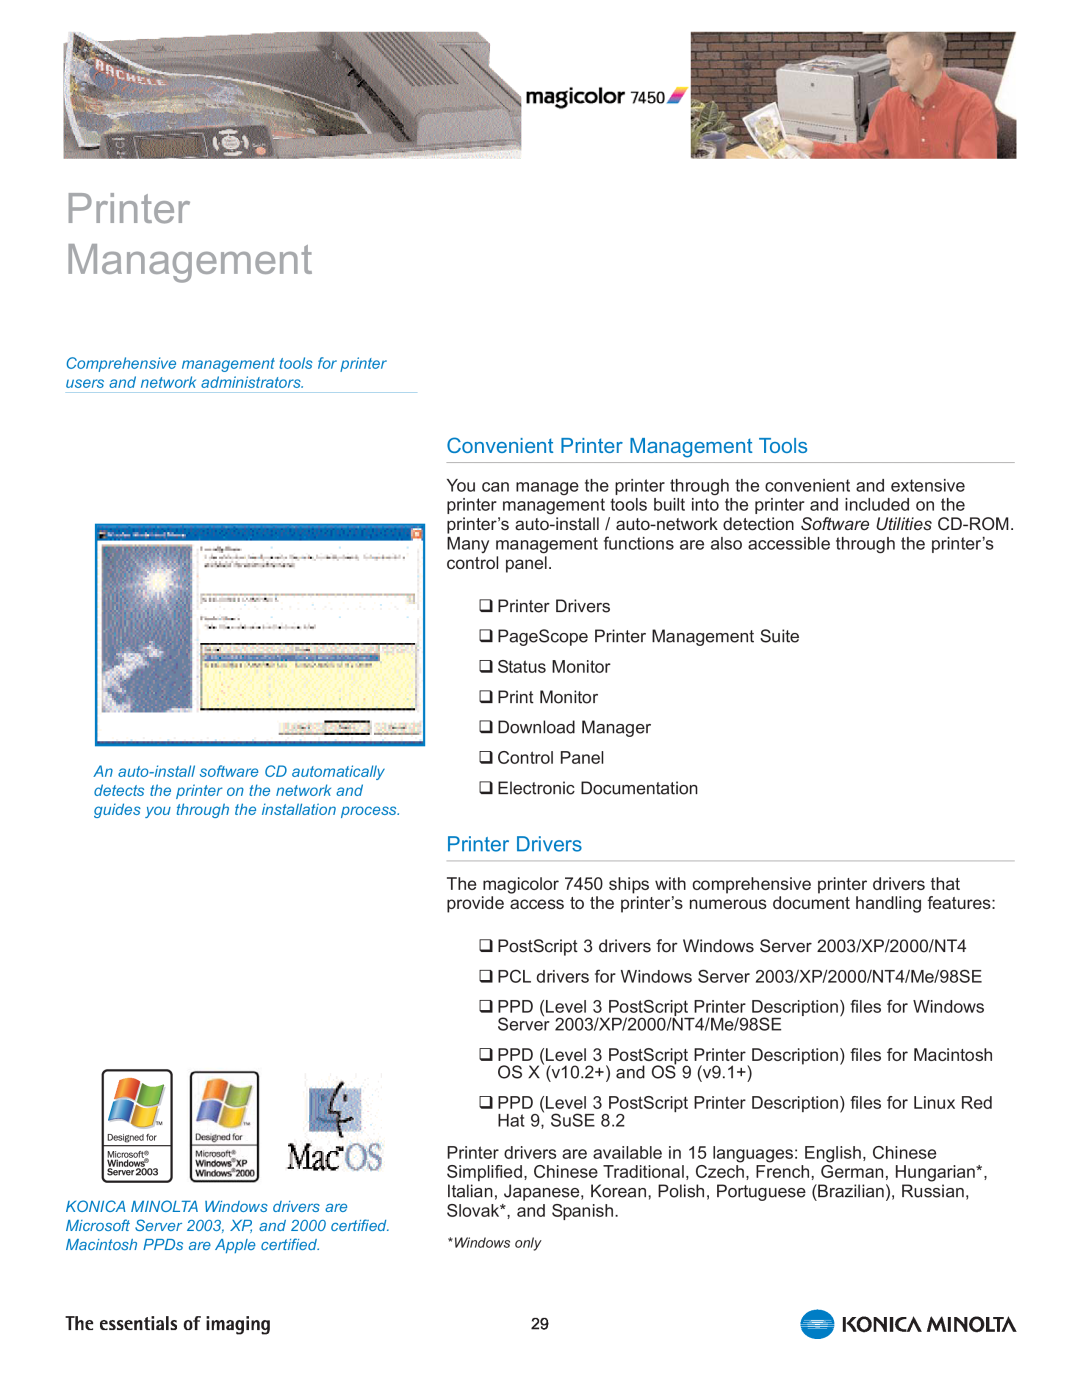 Konica Minolta 7450 manual Convenient Printer Management Tools, Printer Drivers 